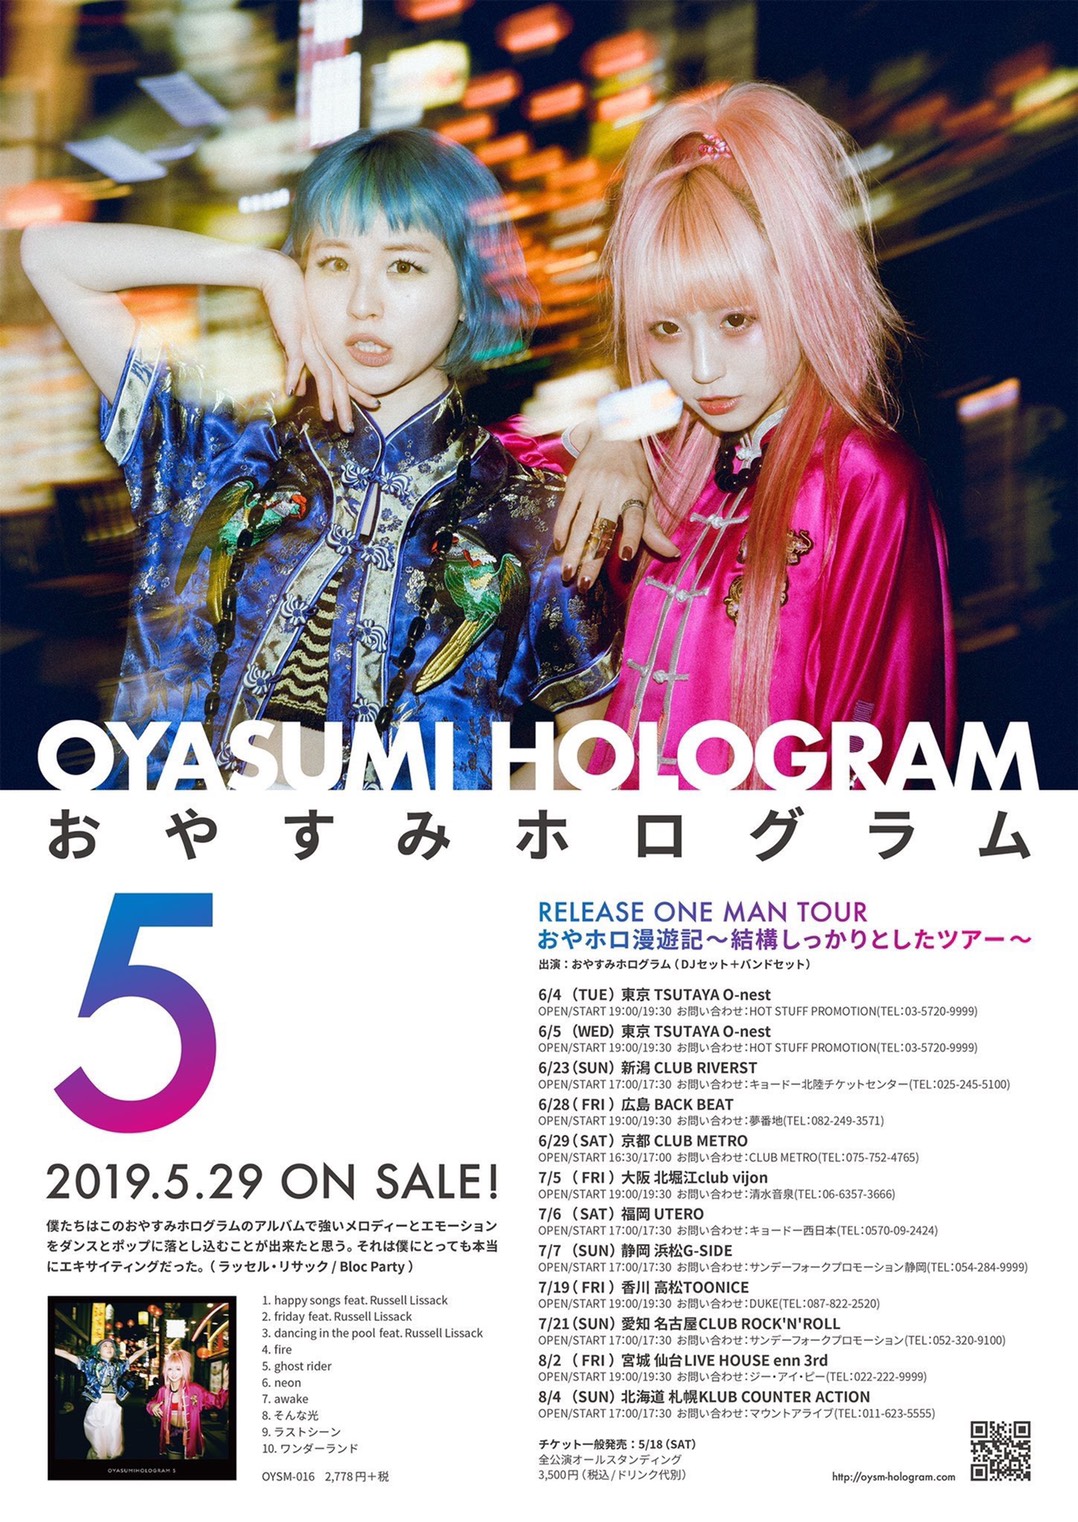 OYASUMI HOLOGRAM RELEASE ONE MAN TOUR